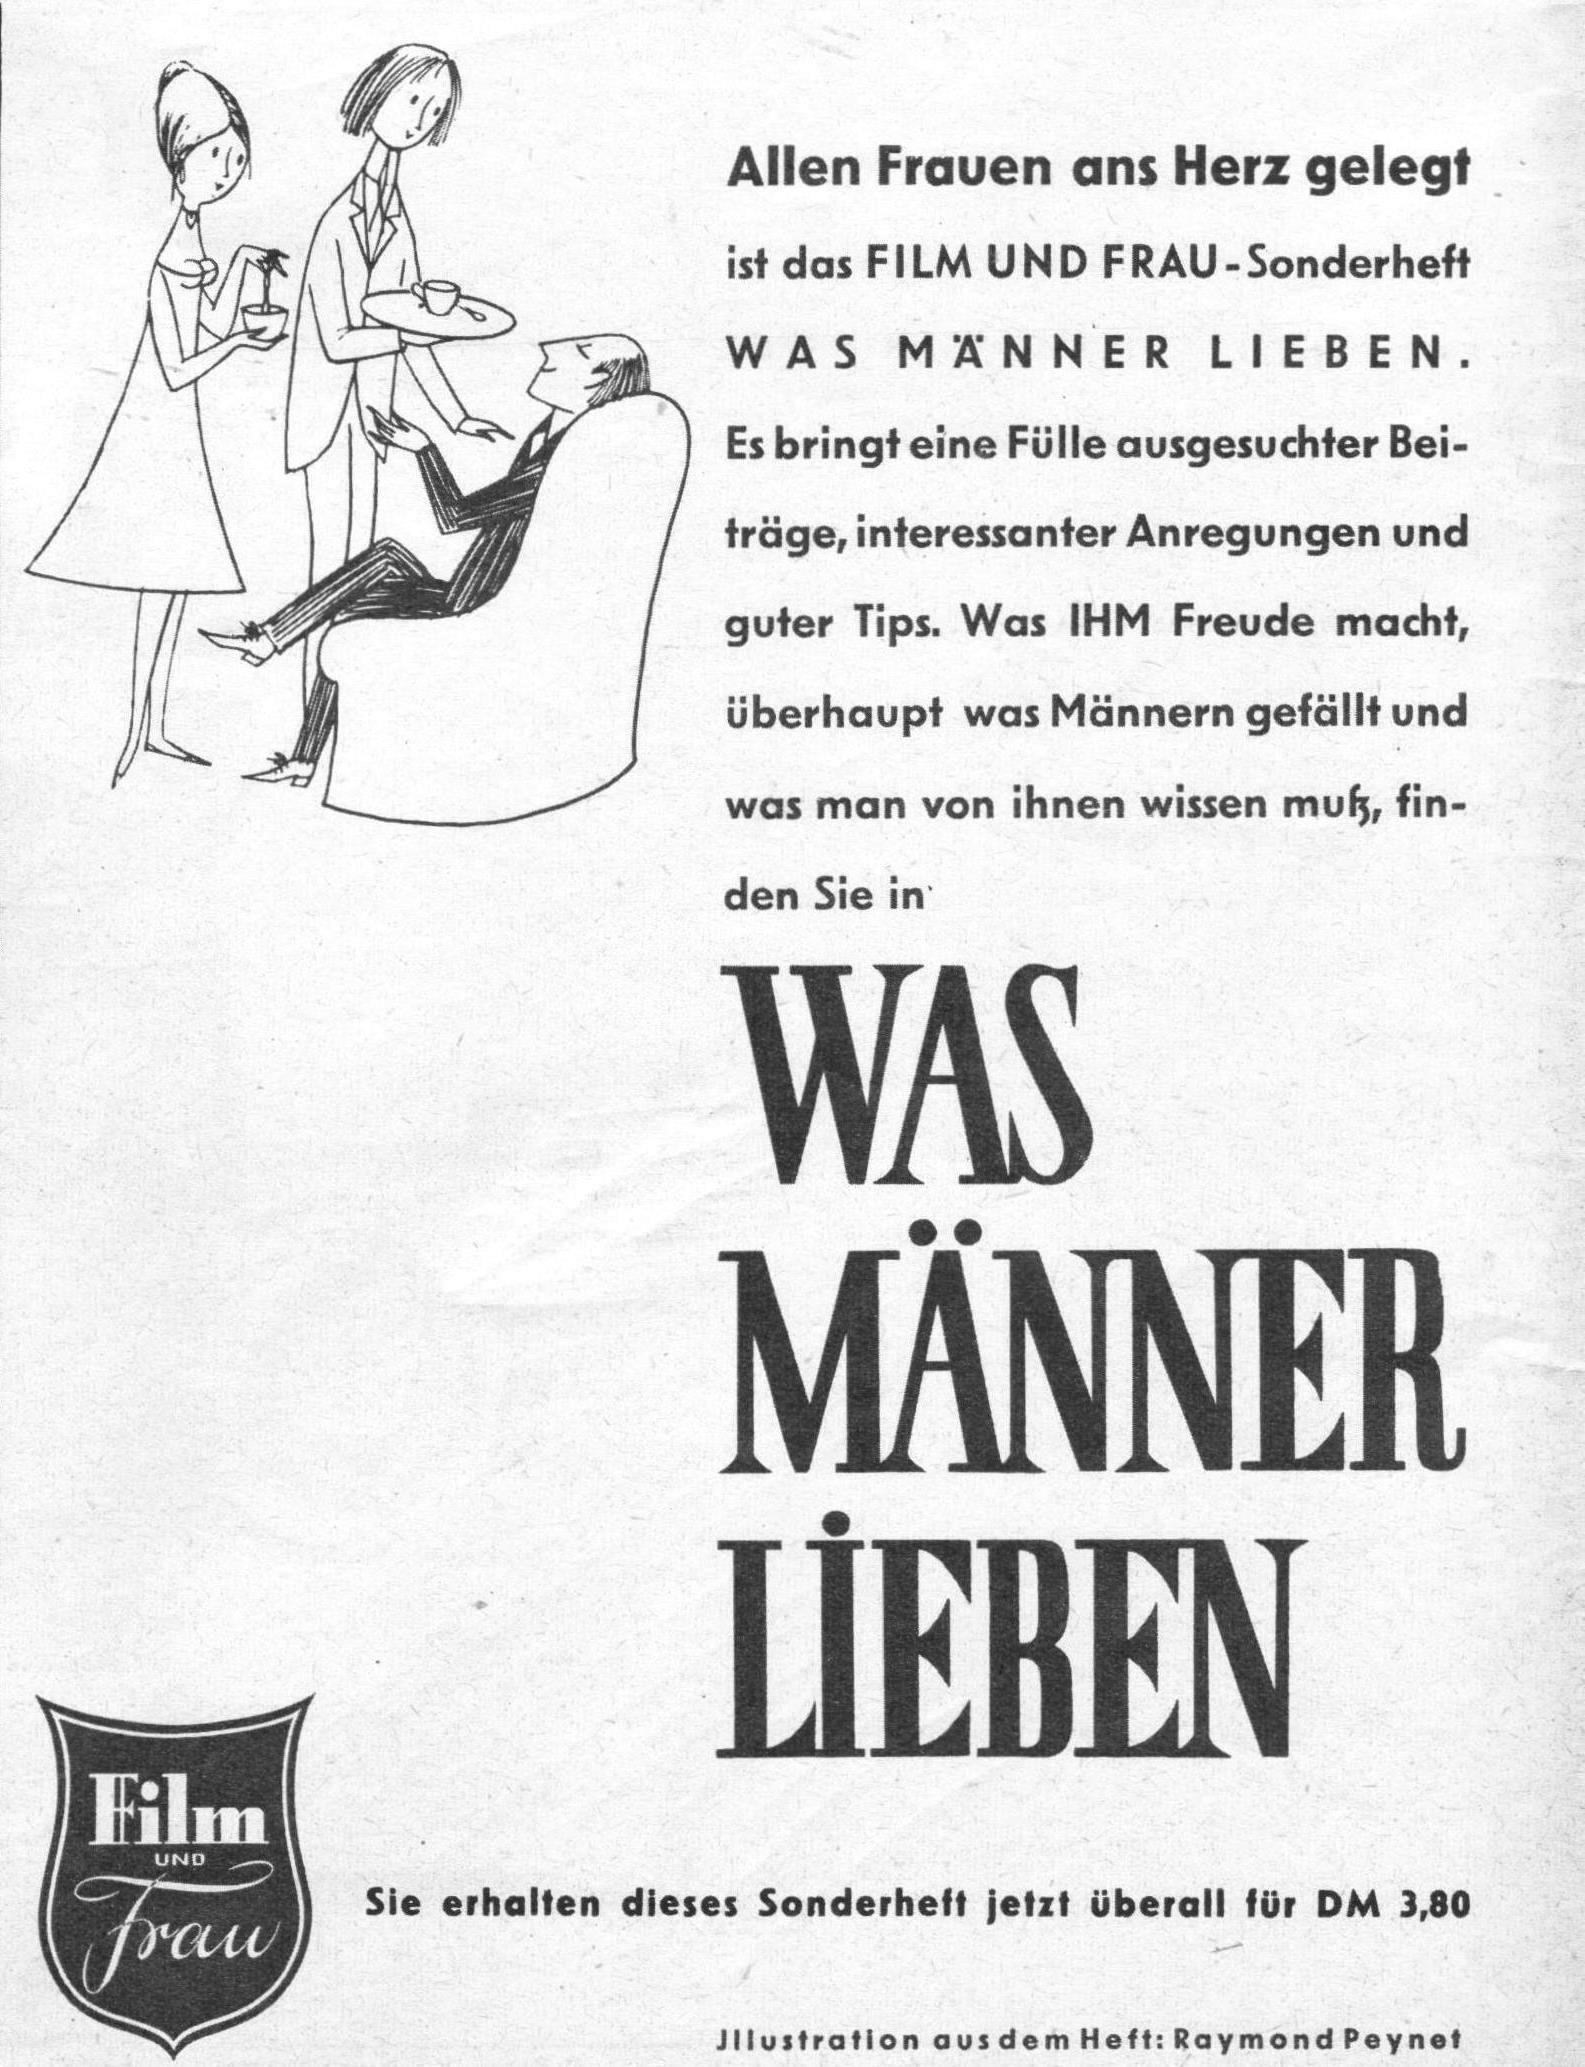 Film und Frau 1959 398.jpg